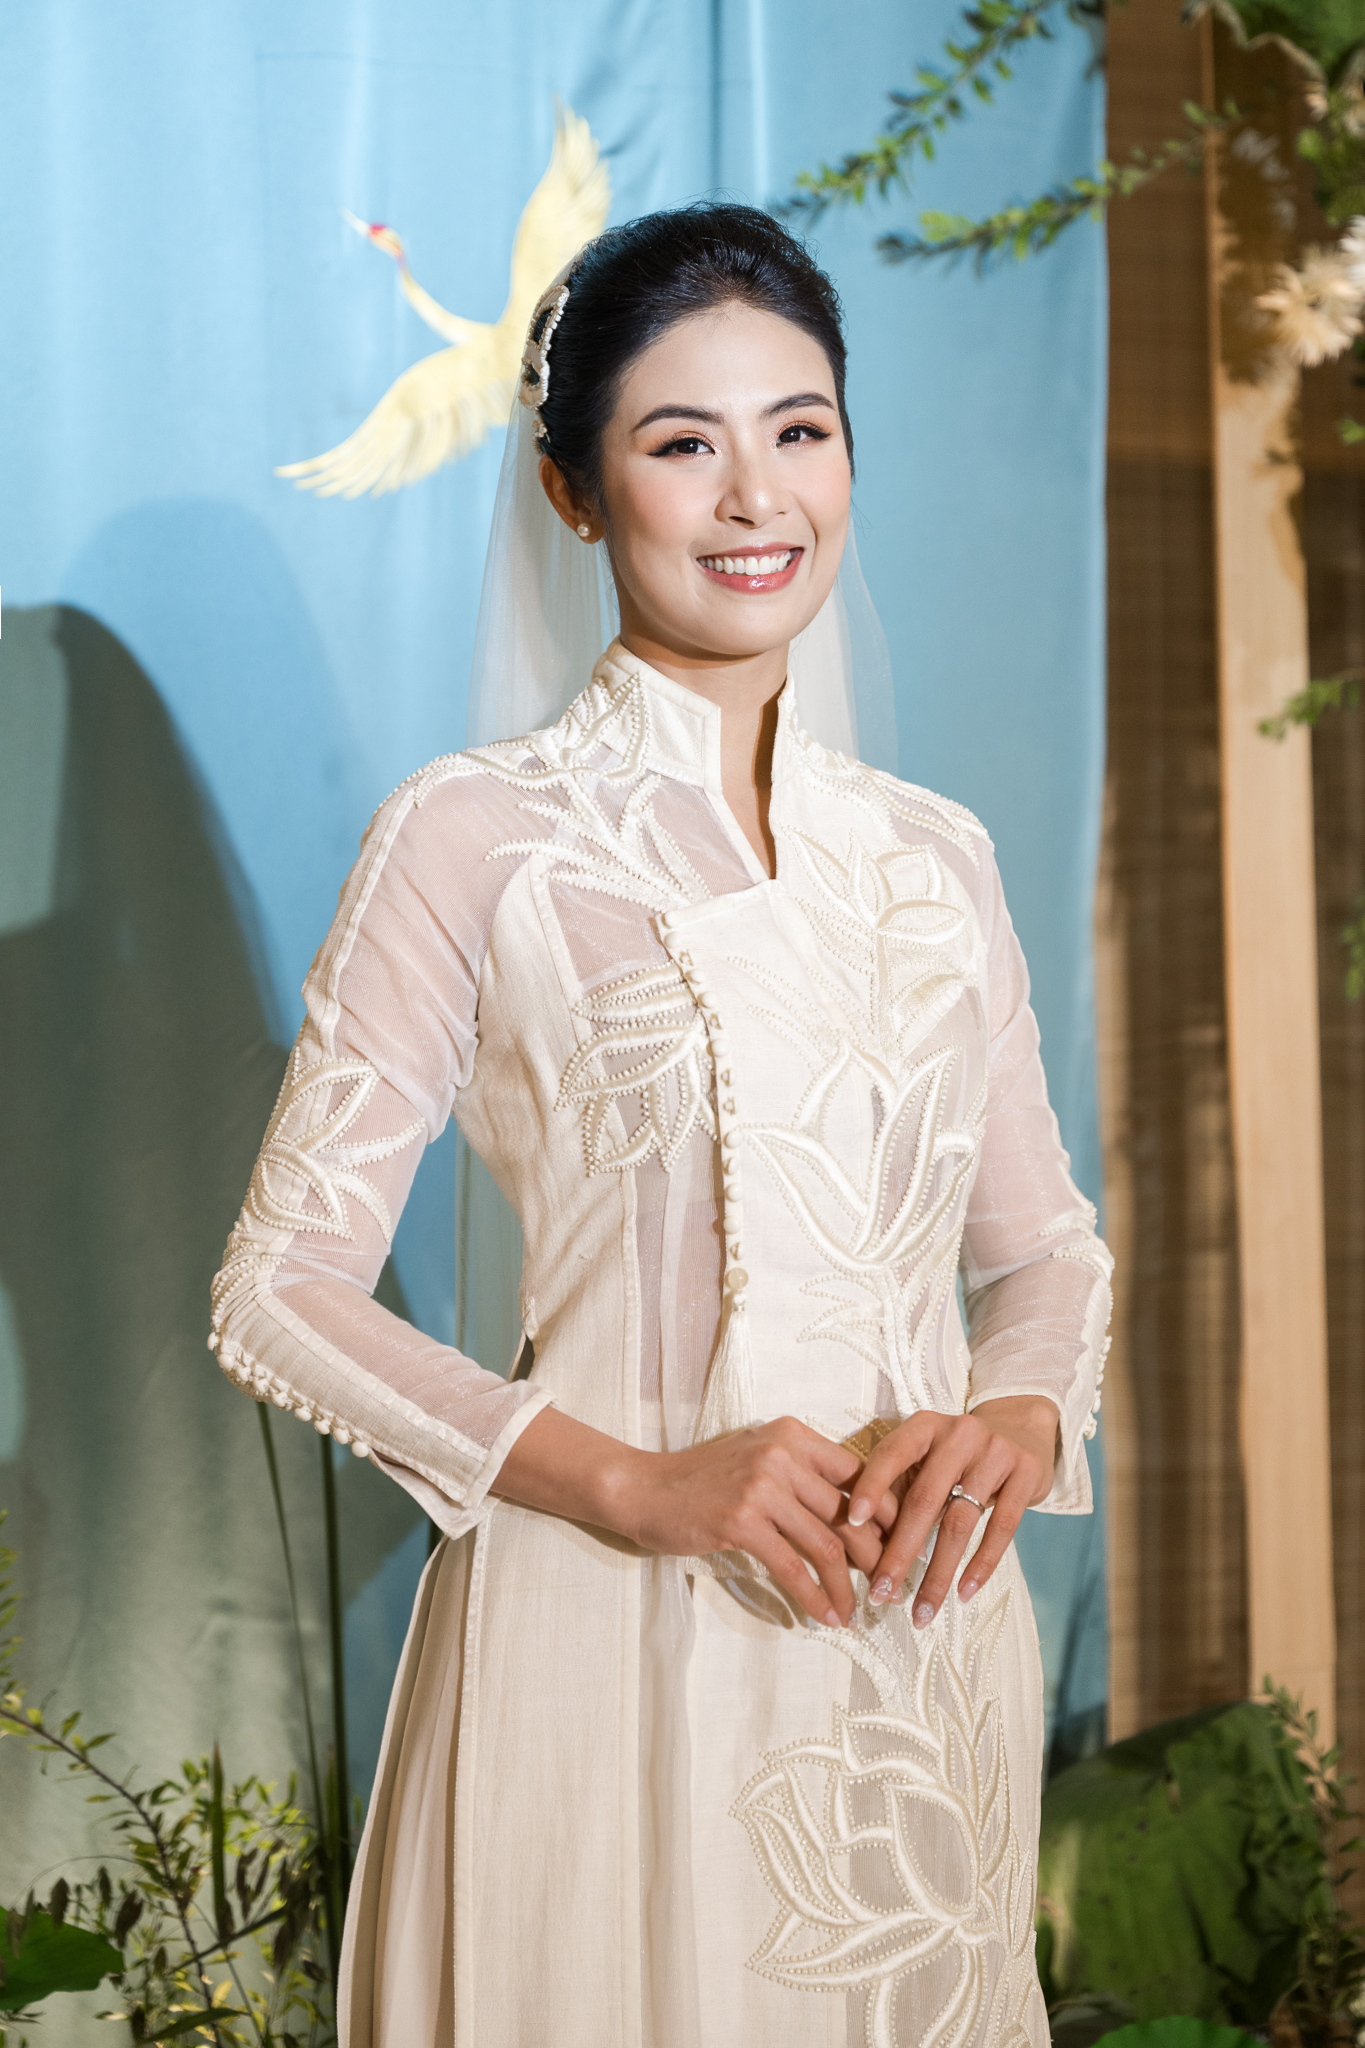 Hoa hậu Ngọc Hân xuất hiện xinh đẹp và nổi bật bên chú rể trong tà áo dài tại hôn lễ afamily